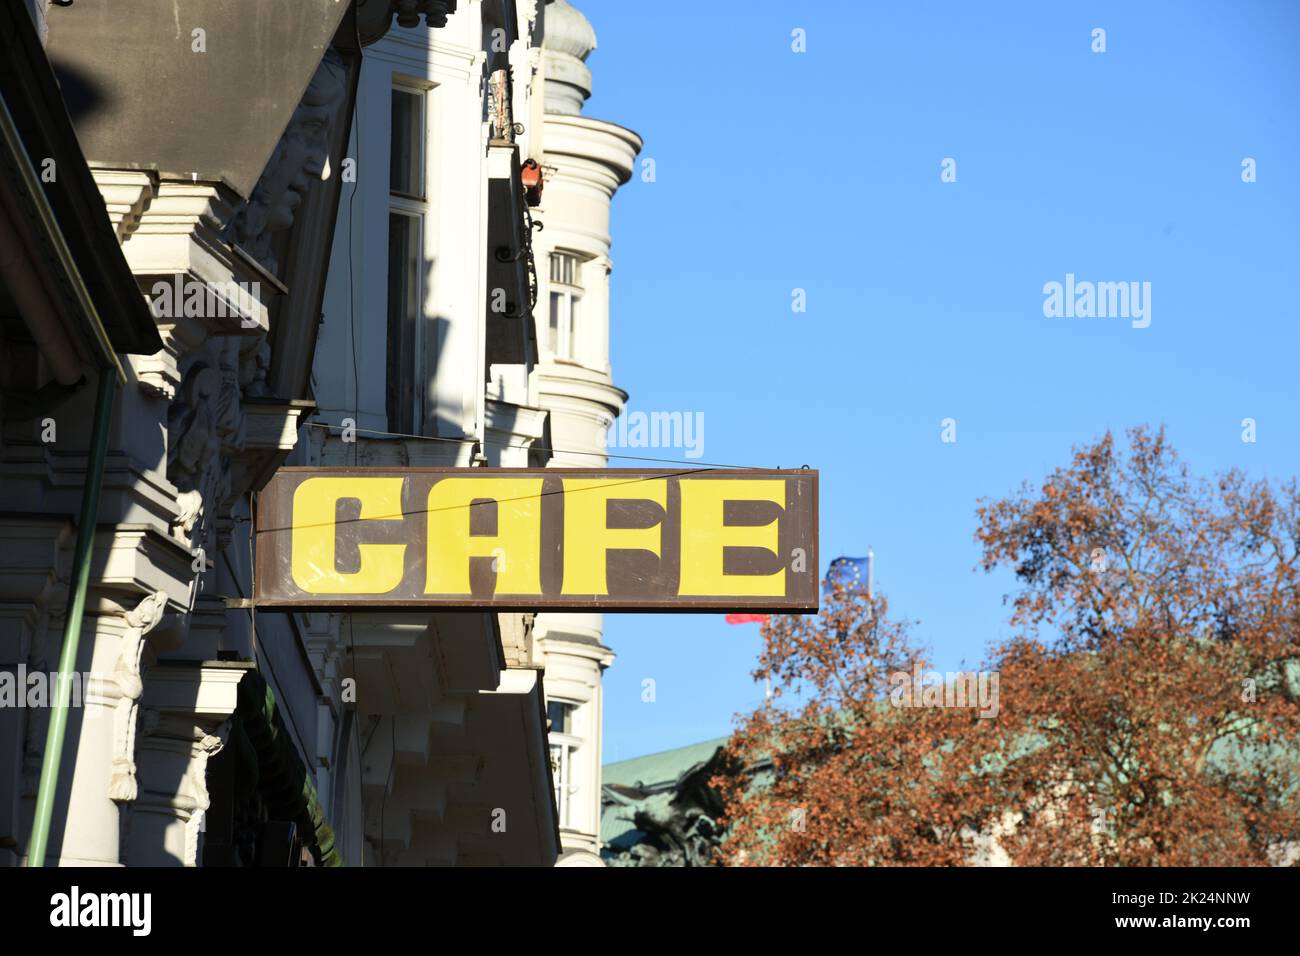 Schild eines Kaffeehauses in Wien Österreich, Europa - Sign of a cafe in Vienna Austria, Europe Stock Photo